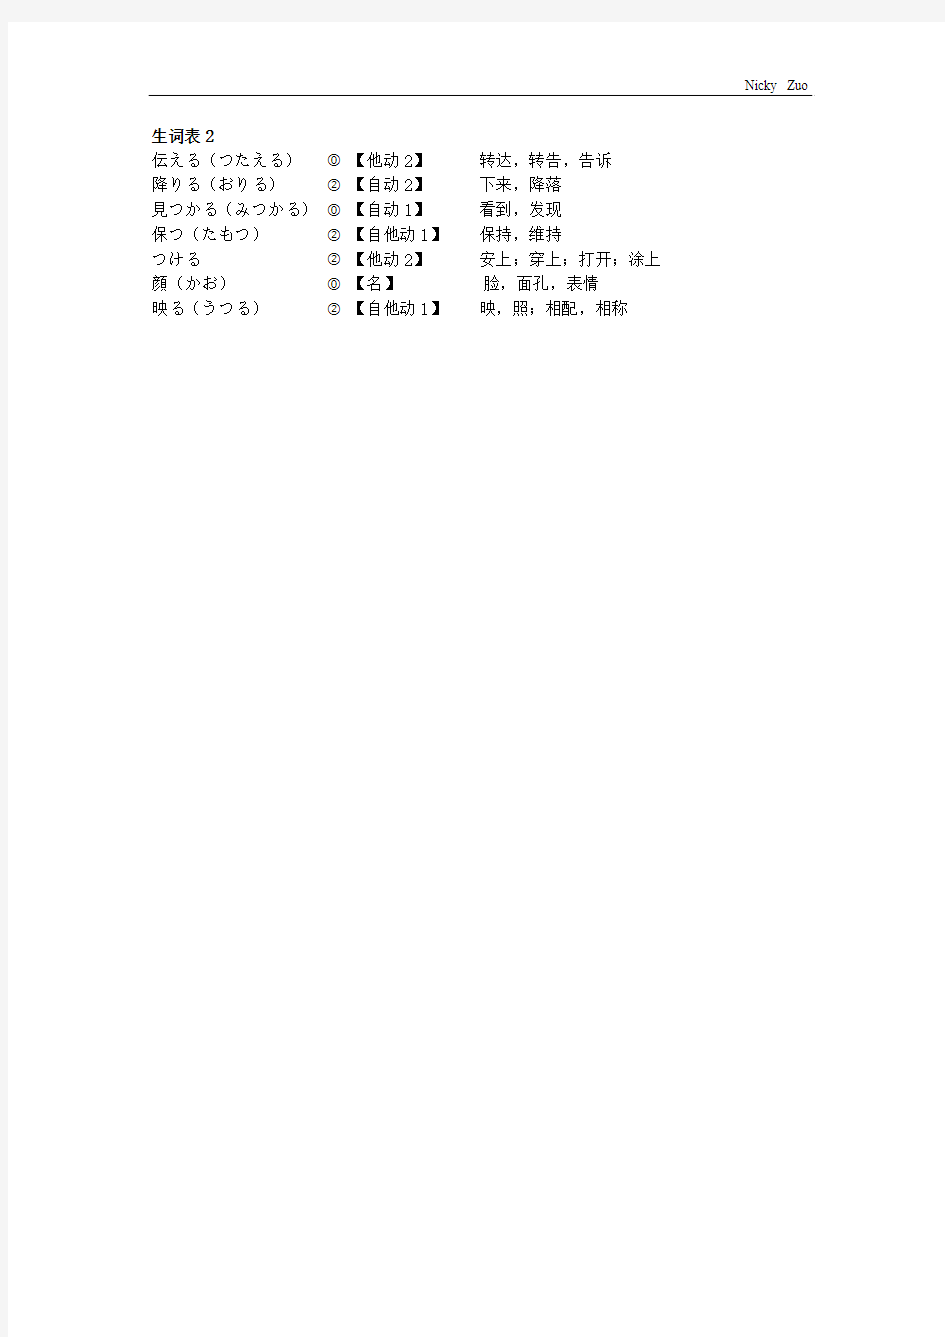 新大学日语标准教程(基础篇2)10-12课_单词